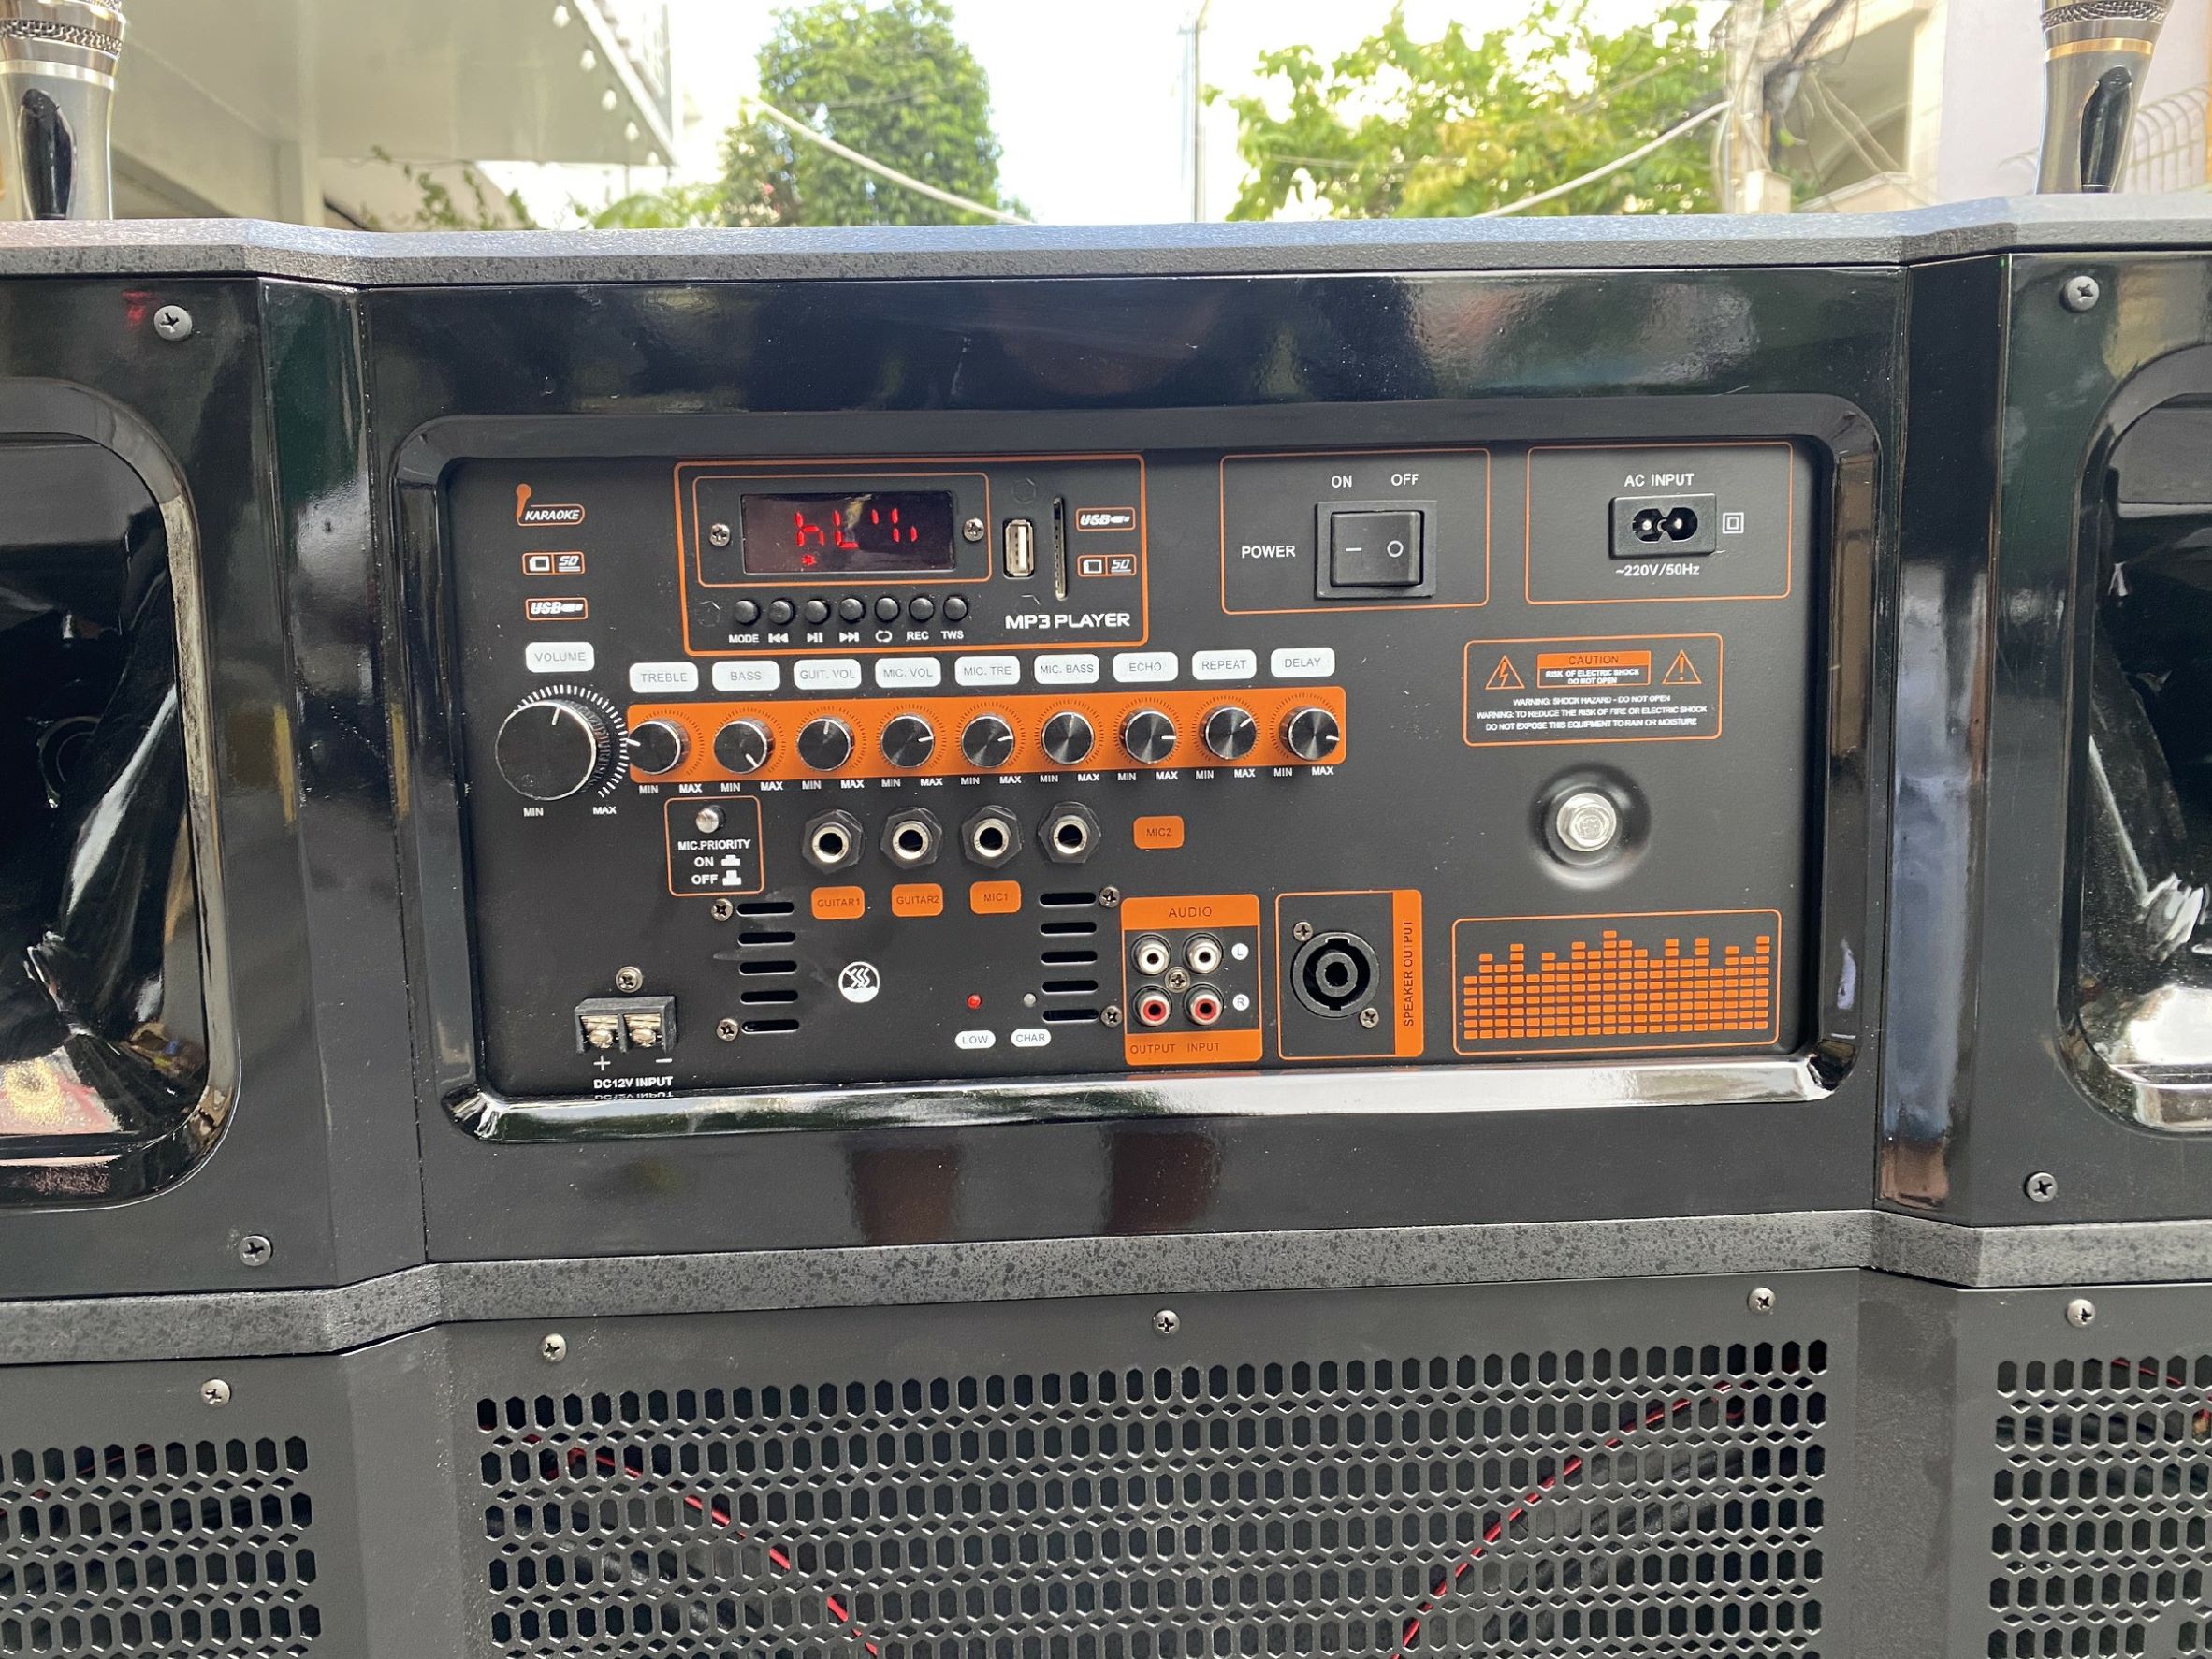 Loa kéo di động MTMax BK33 - Dàn karaoke ngoài trời bass 4 tấc đôi ngang, 2 treble - Loa khủng long công suất đến 6500W - Kèm 2 micro UHF - Đầy đủ kết nối Bluetooth, AV, USB, SD card, TWS - Thùng gỗ cao cấp cho âm thanh mạnh mẽ, chân thực - Hàng nhập khẩu